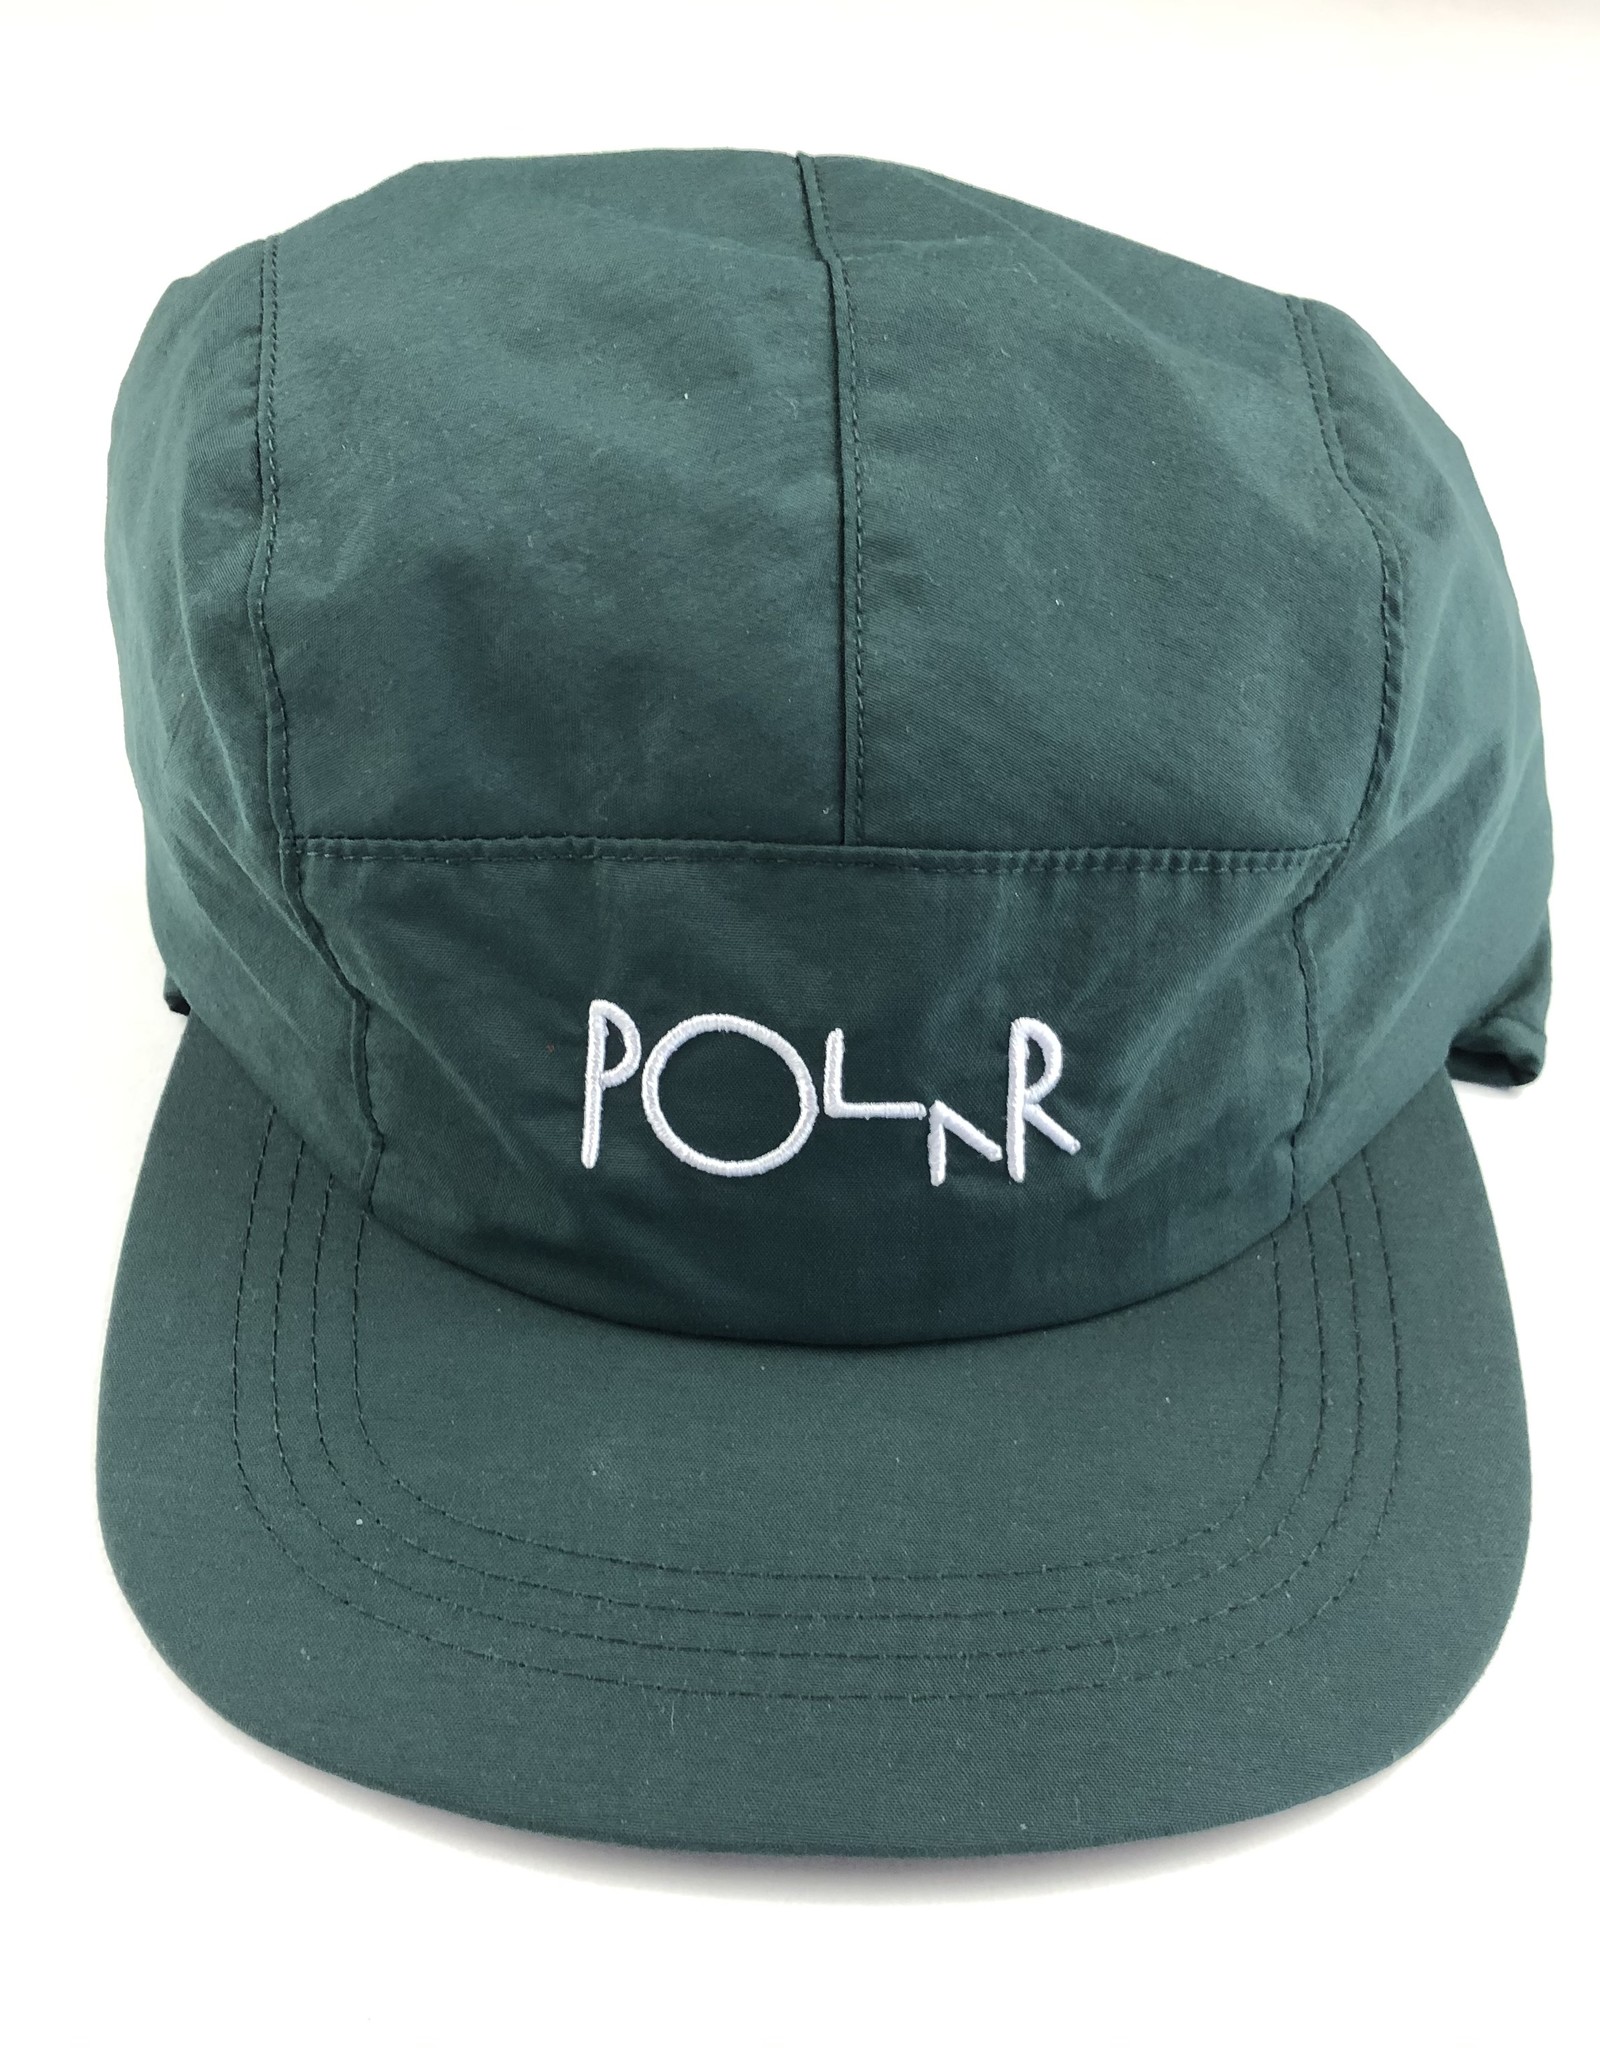 POLAR FLAP CAP HAT - (ALL COLORS)